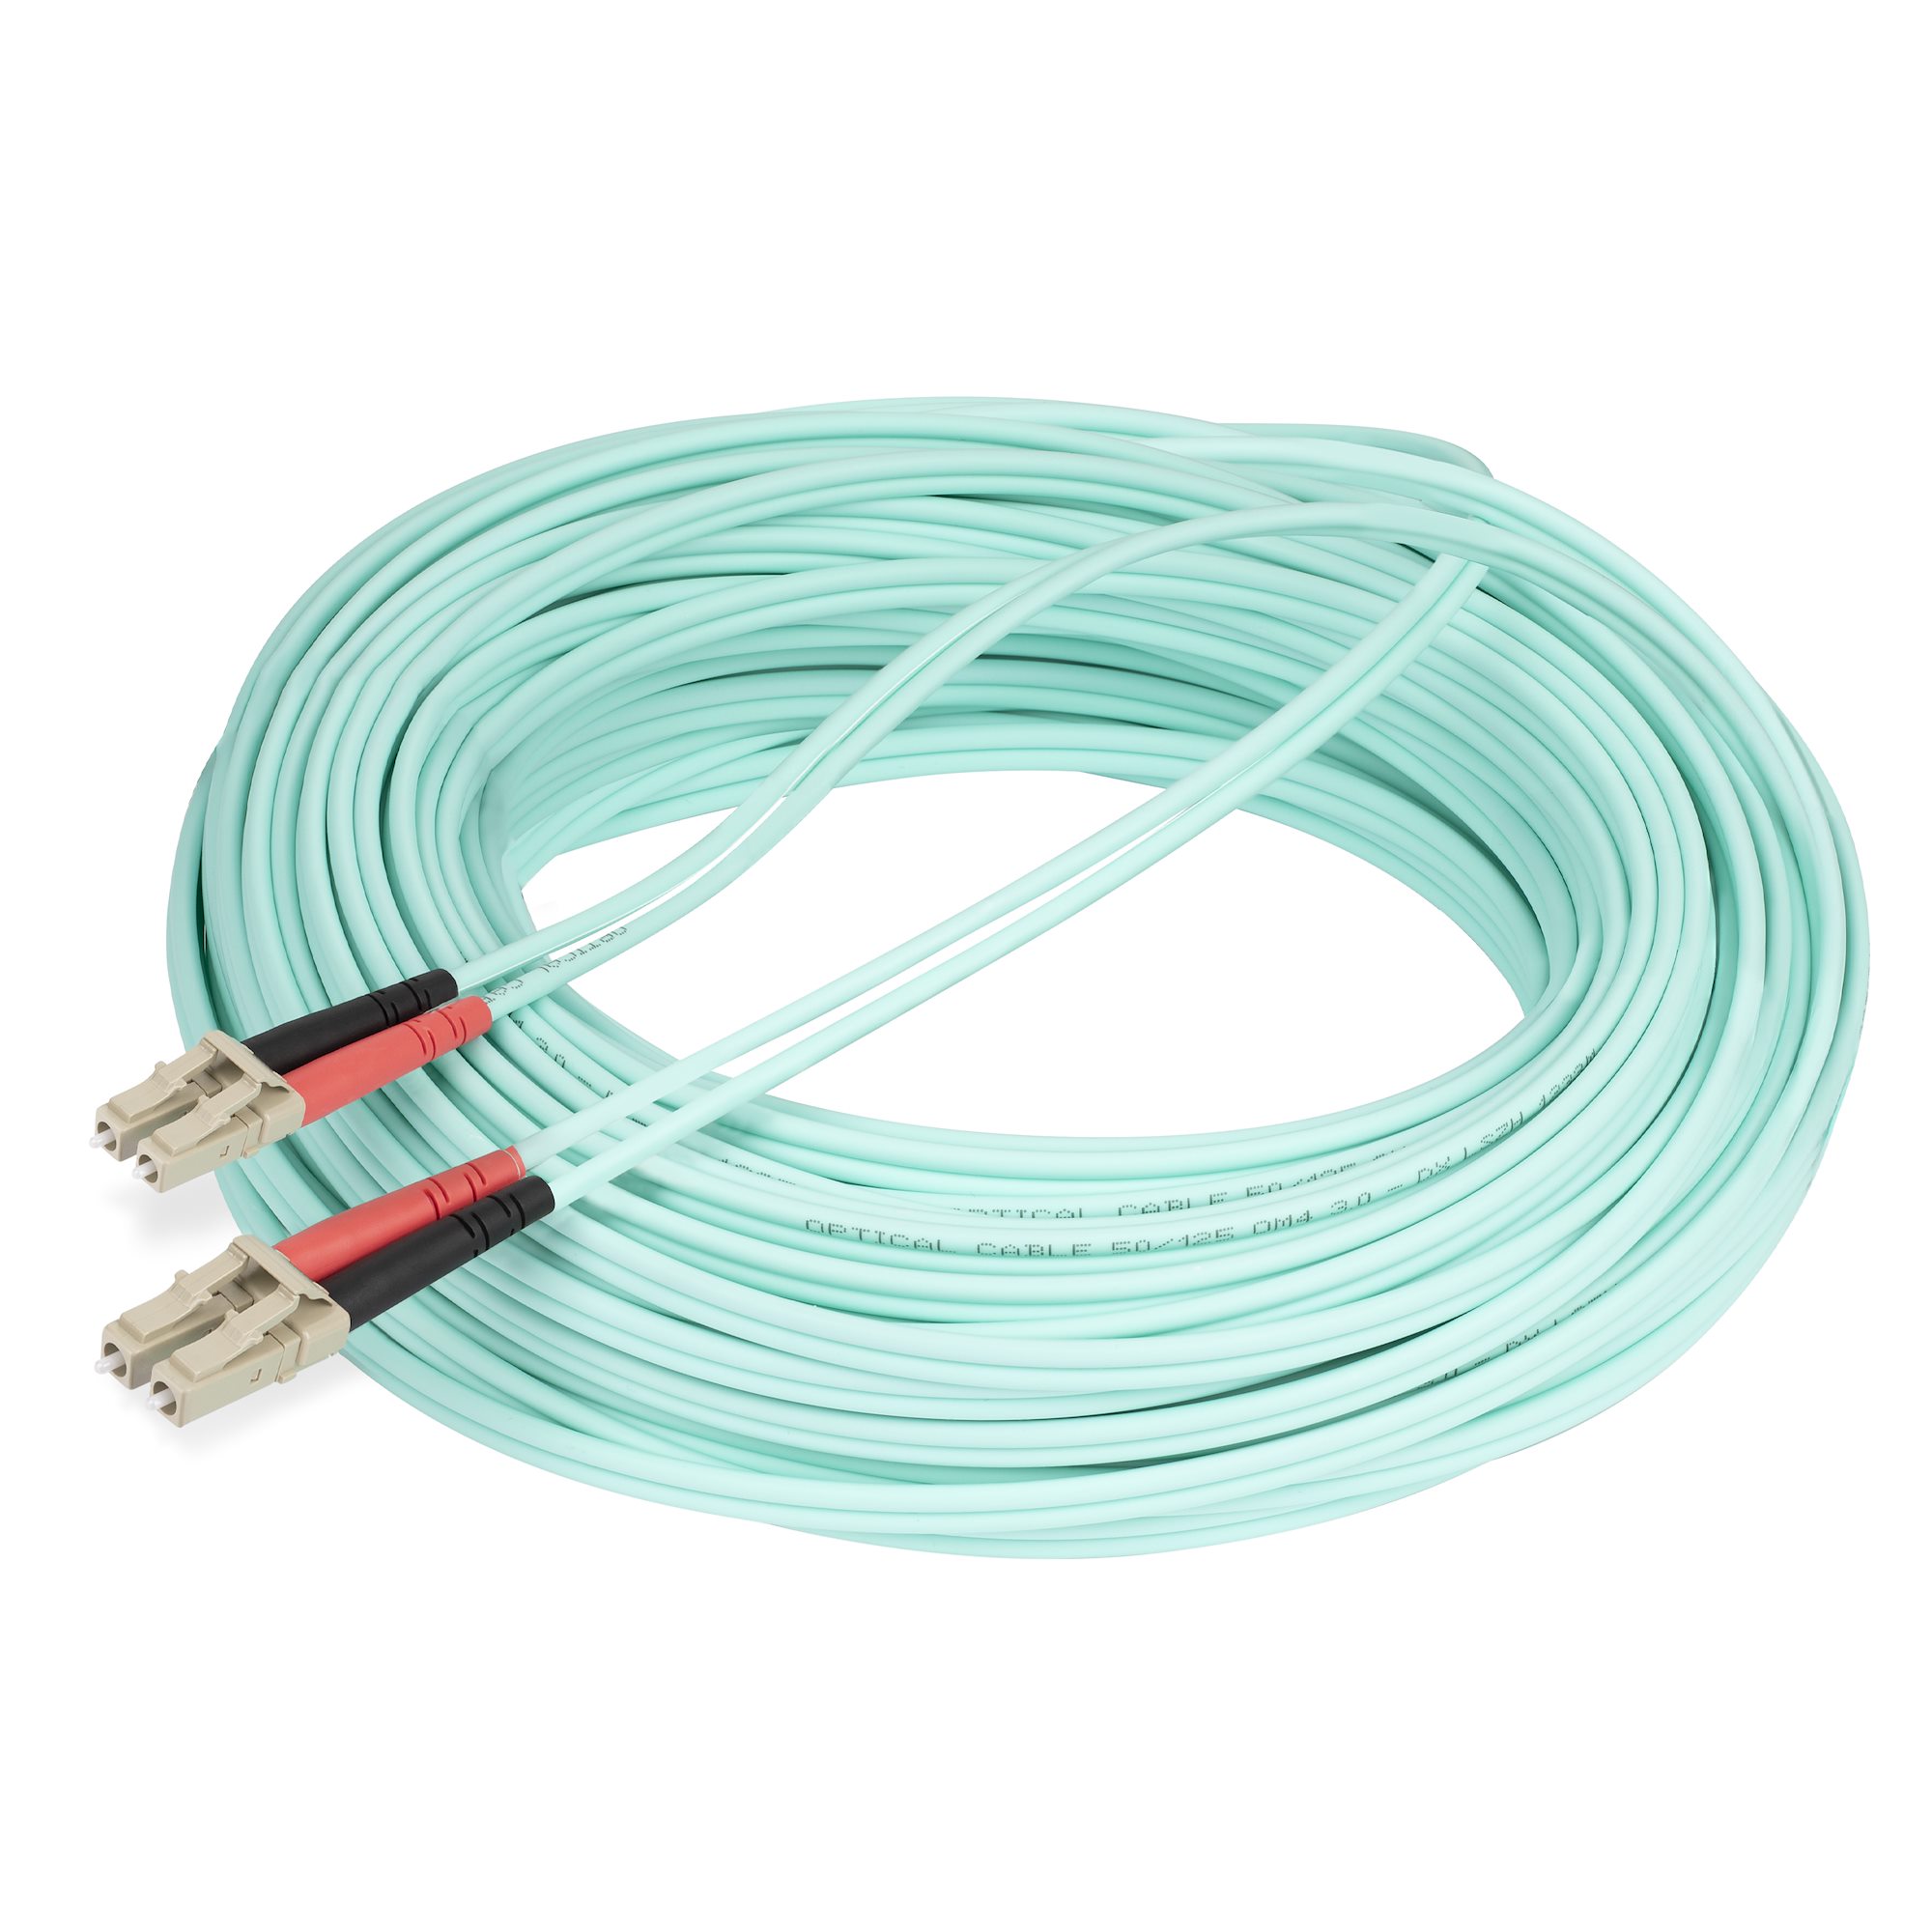 20m LC/UPC OM4 Fiber Cable, LSZH Cord - Fiber Optic Cables & Adapters, Cables